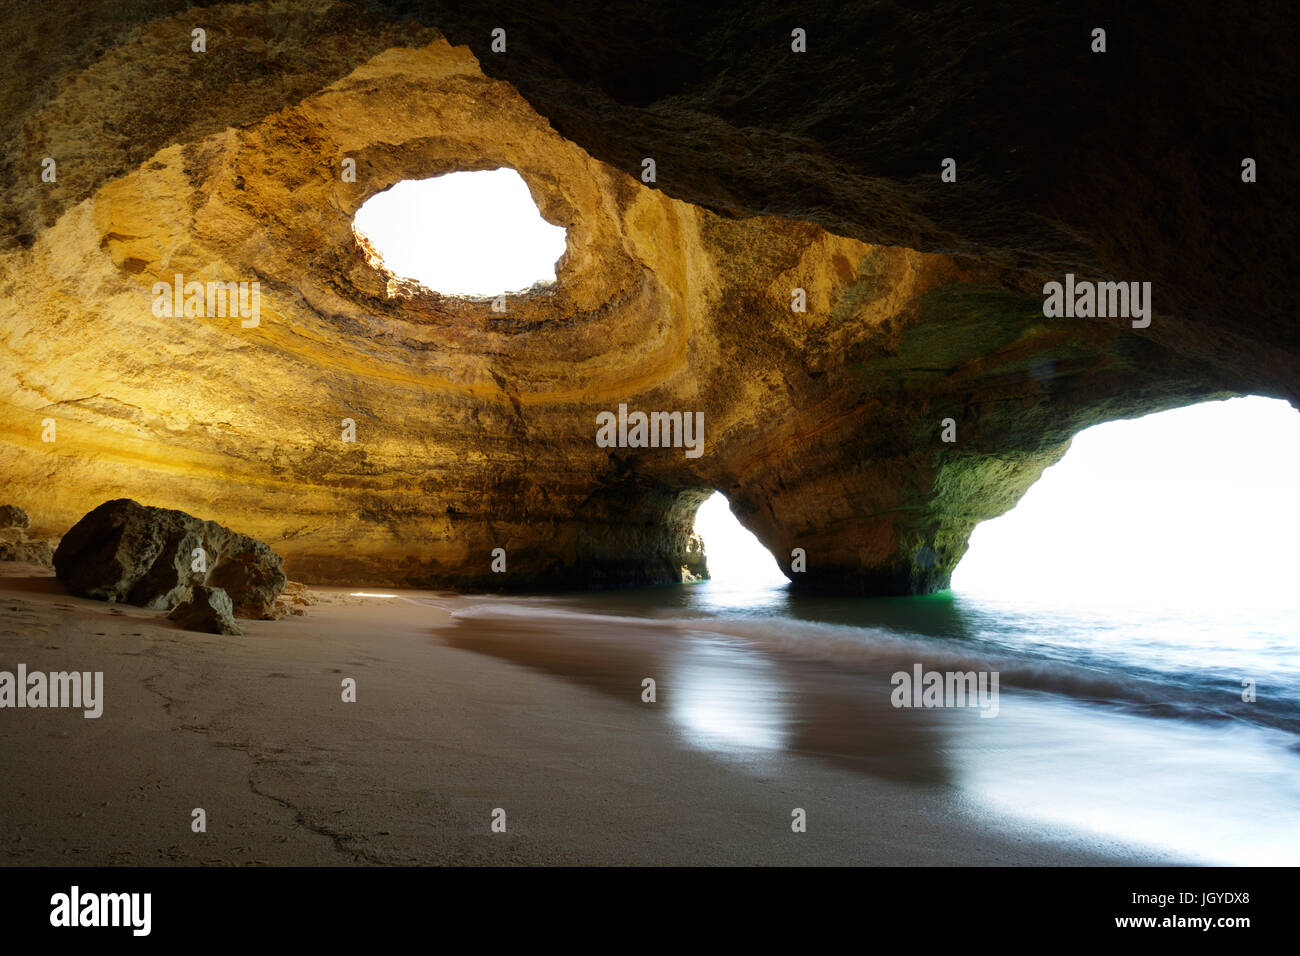 Benagil cave, beach in Algarve, Portugal. Stock Photo